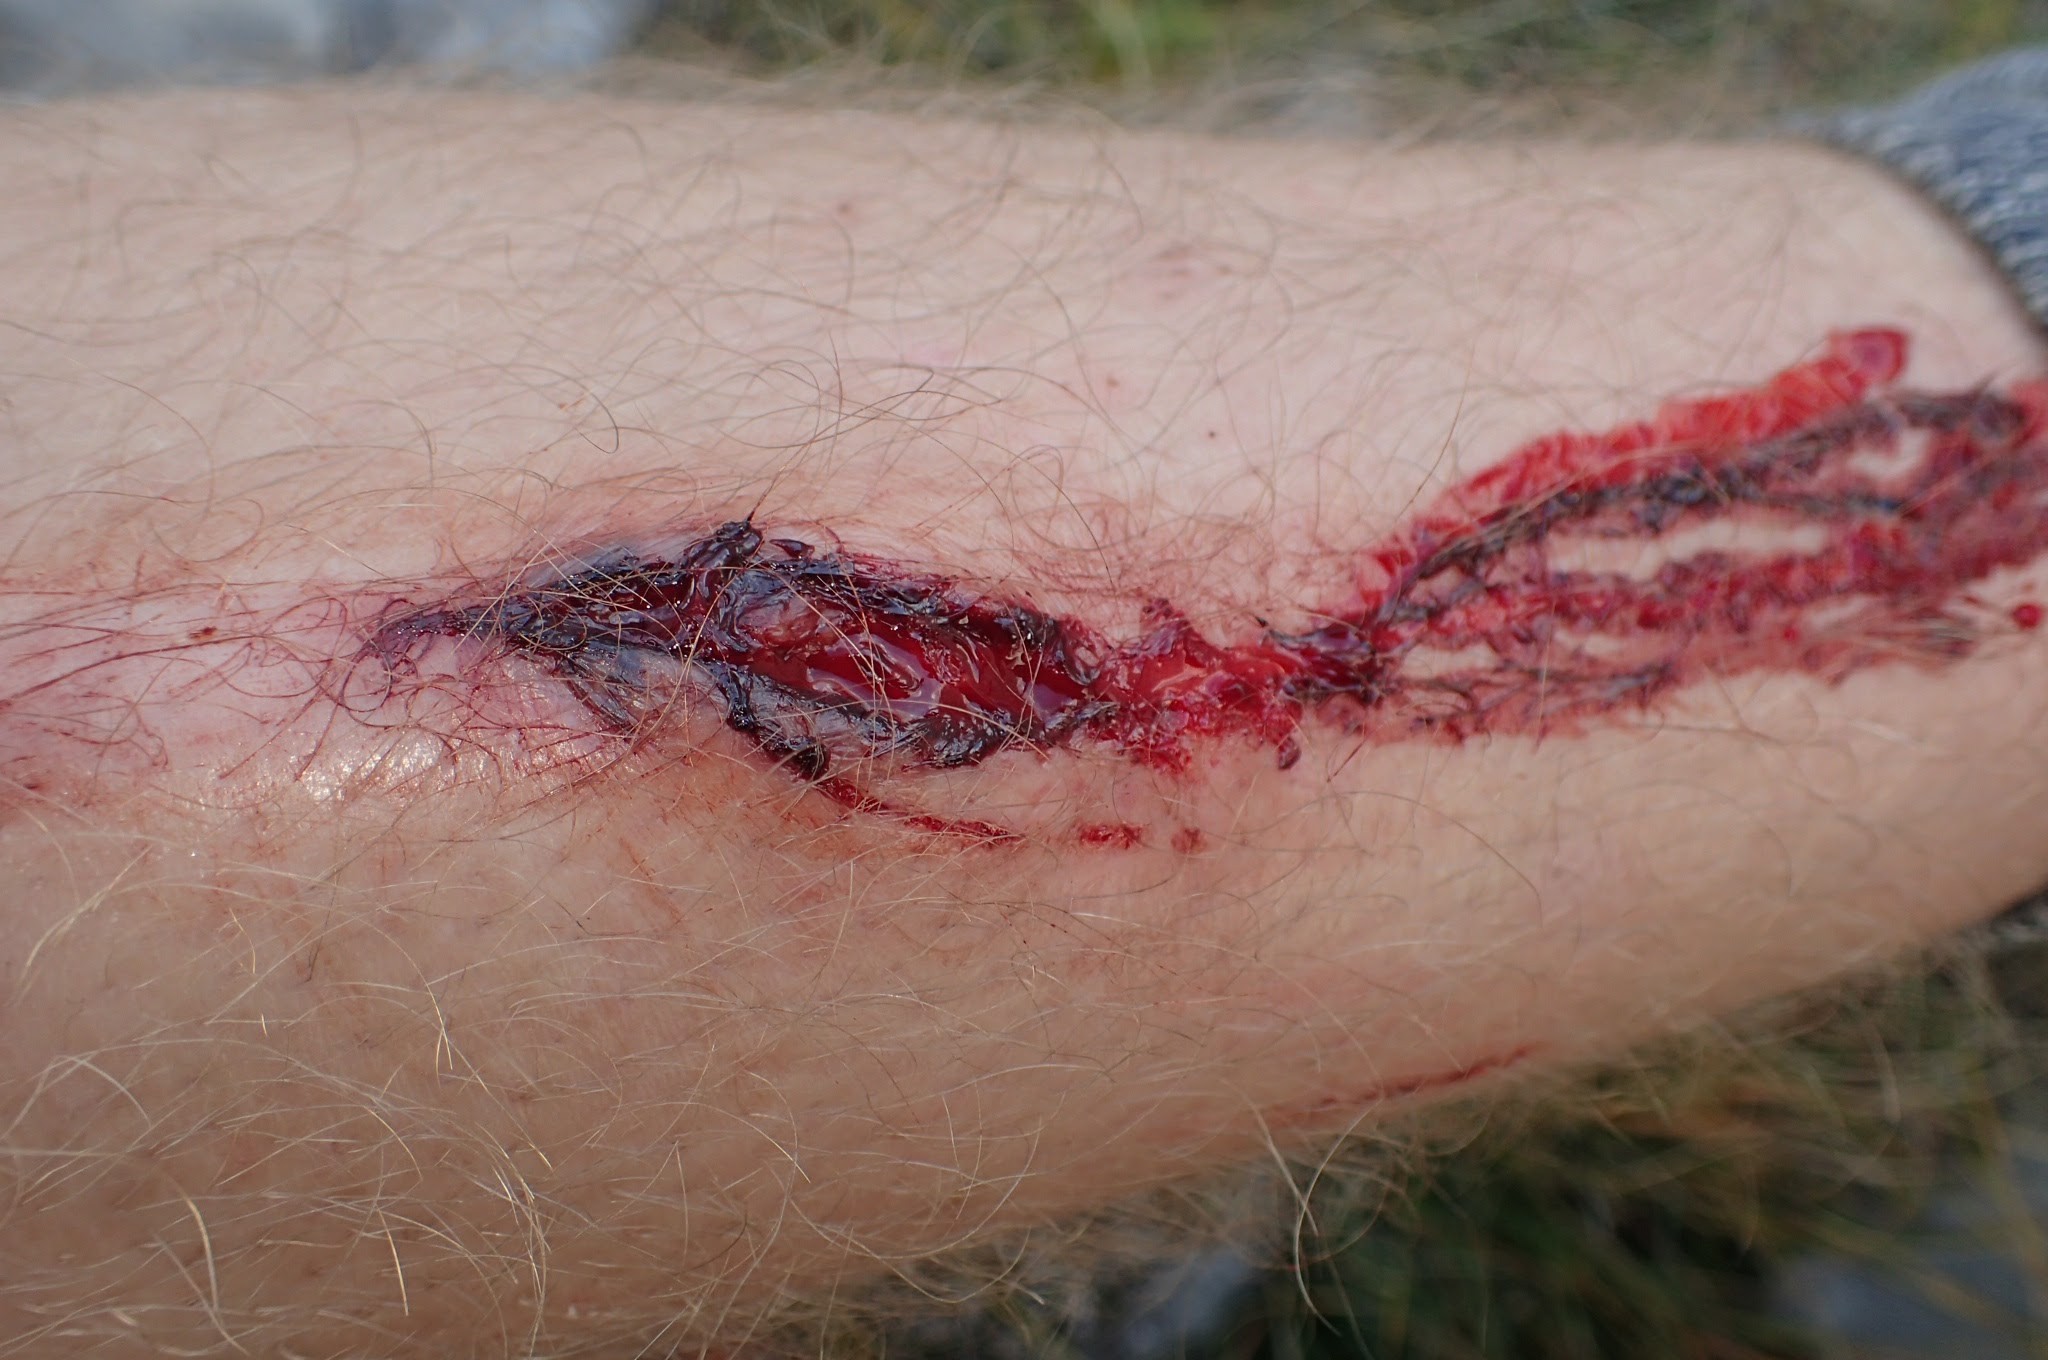 leg-wound